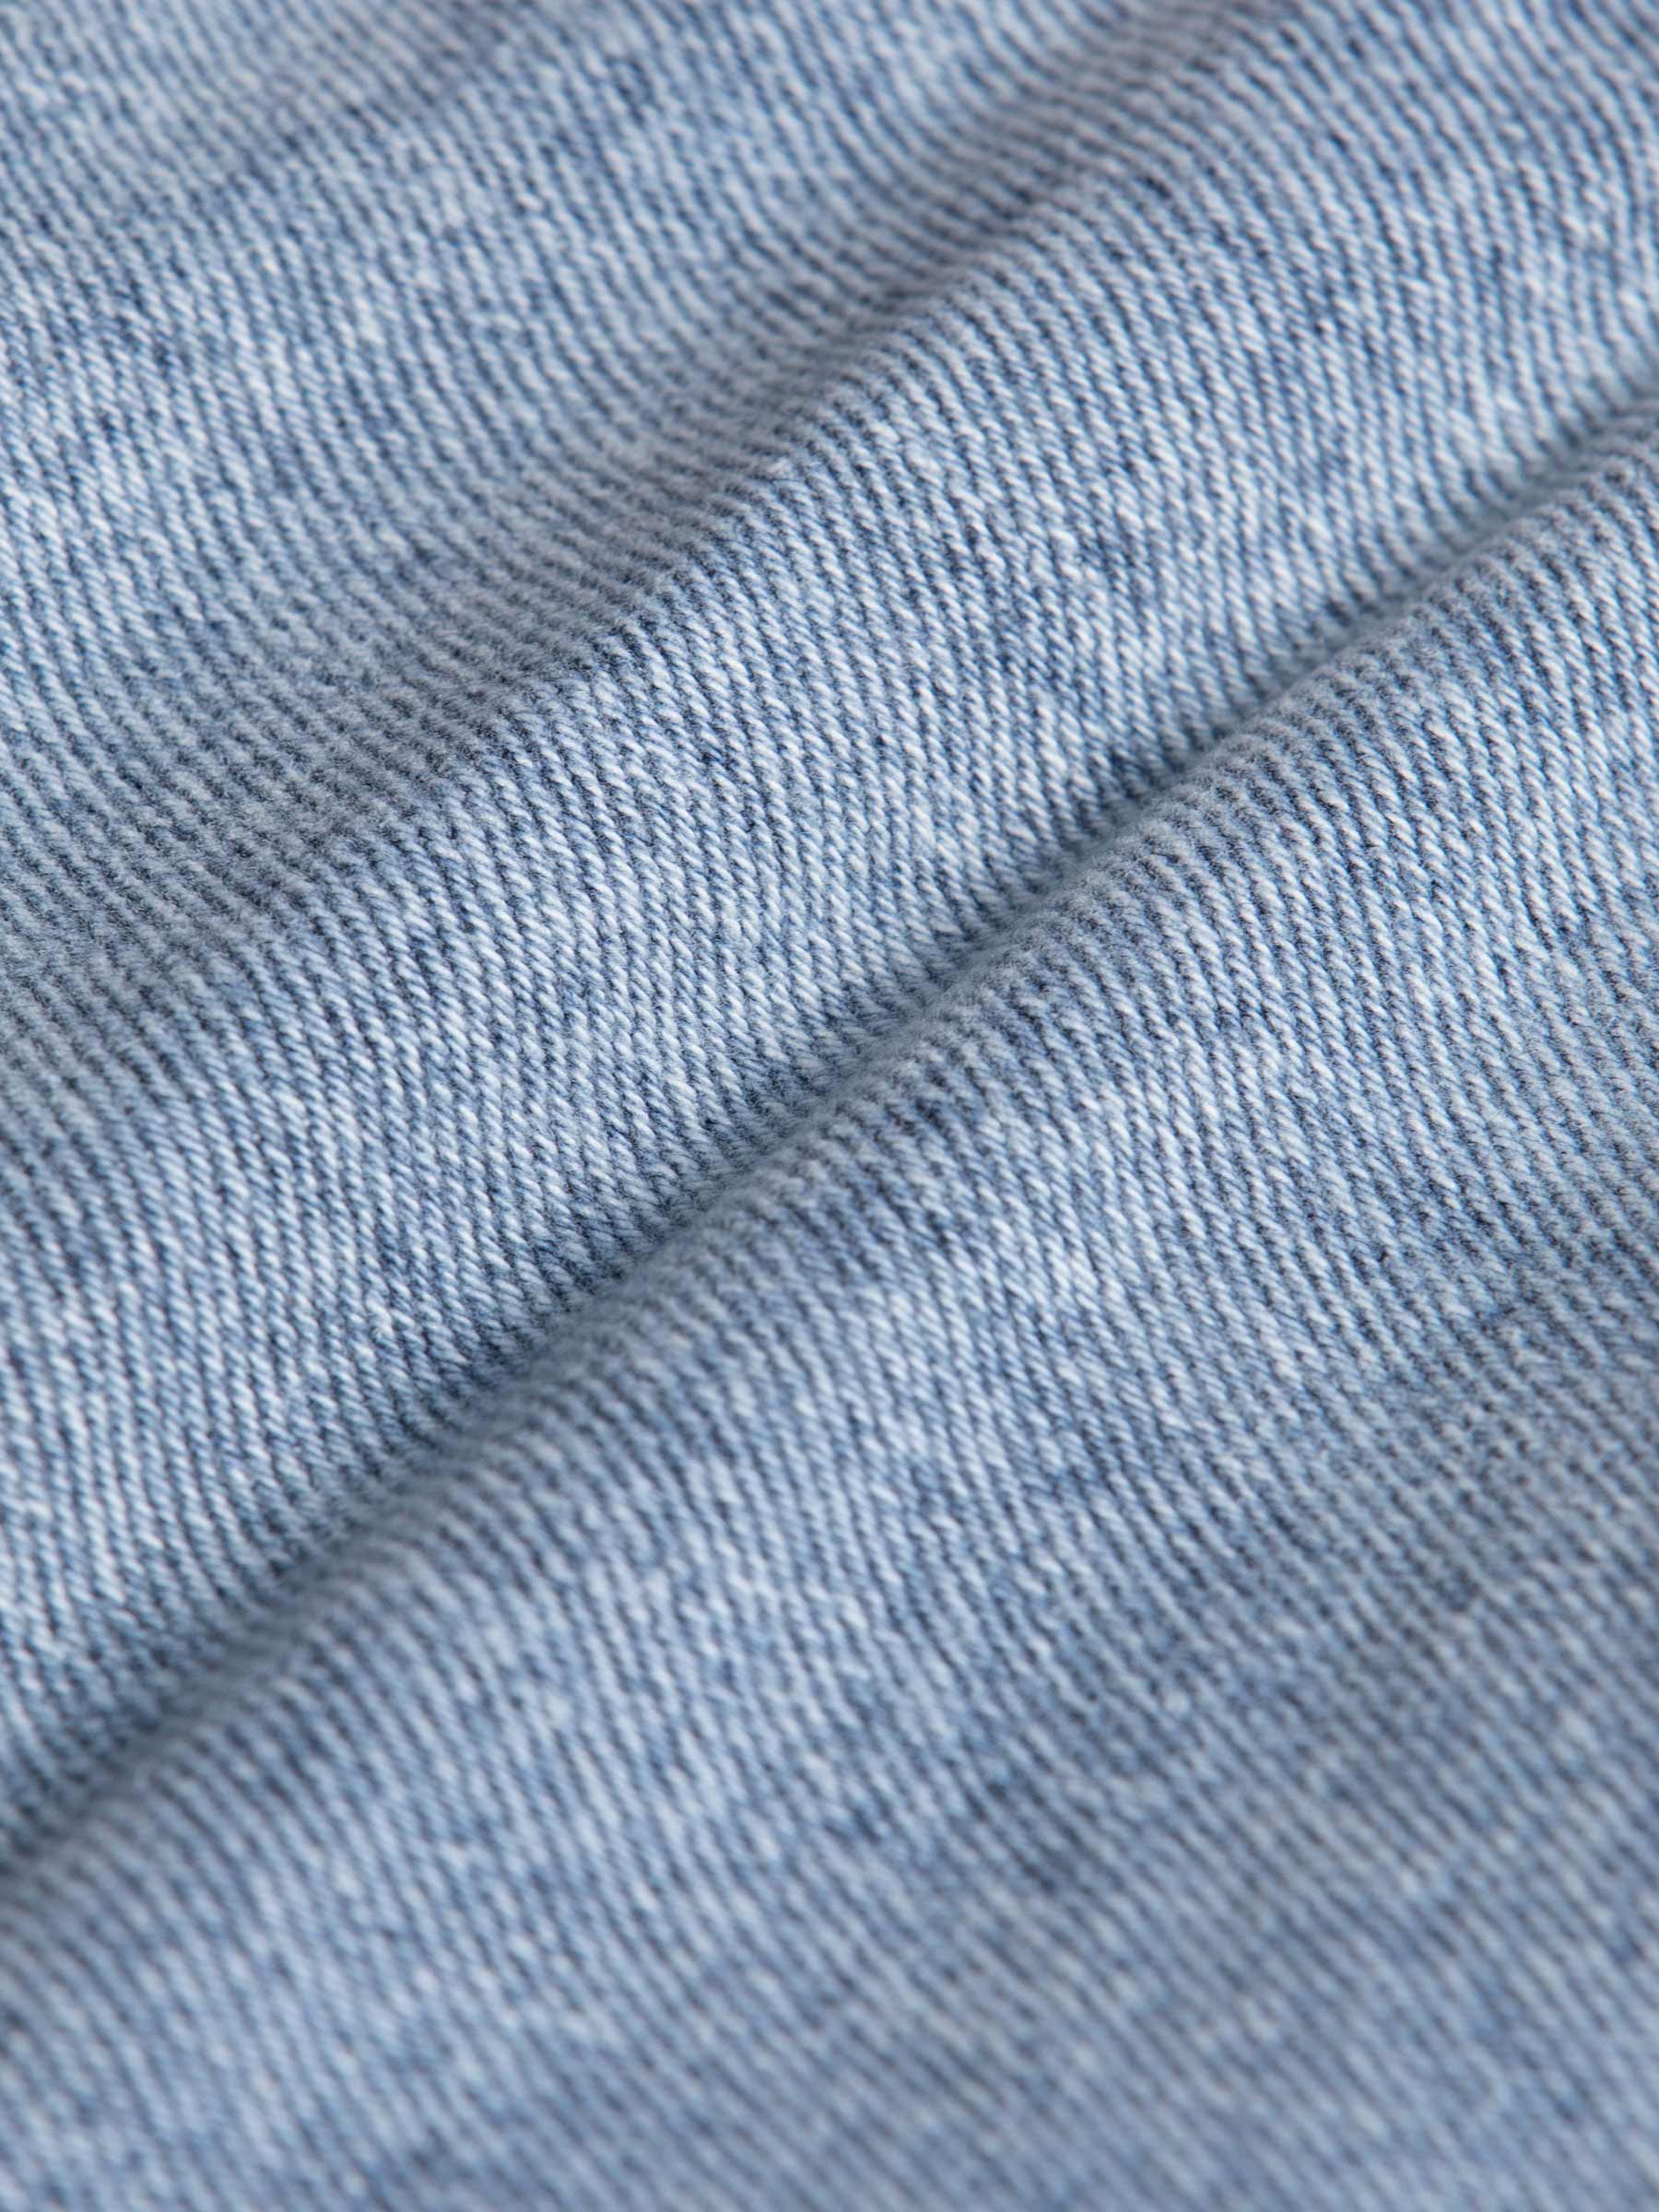 Jeans 82165 Avery Light Blue-40-32